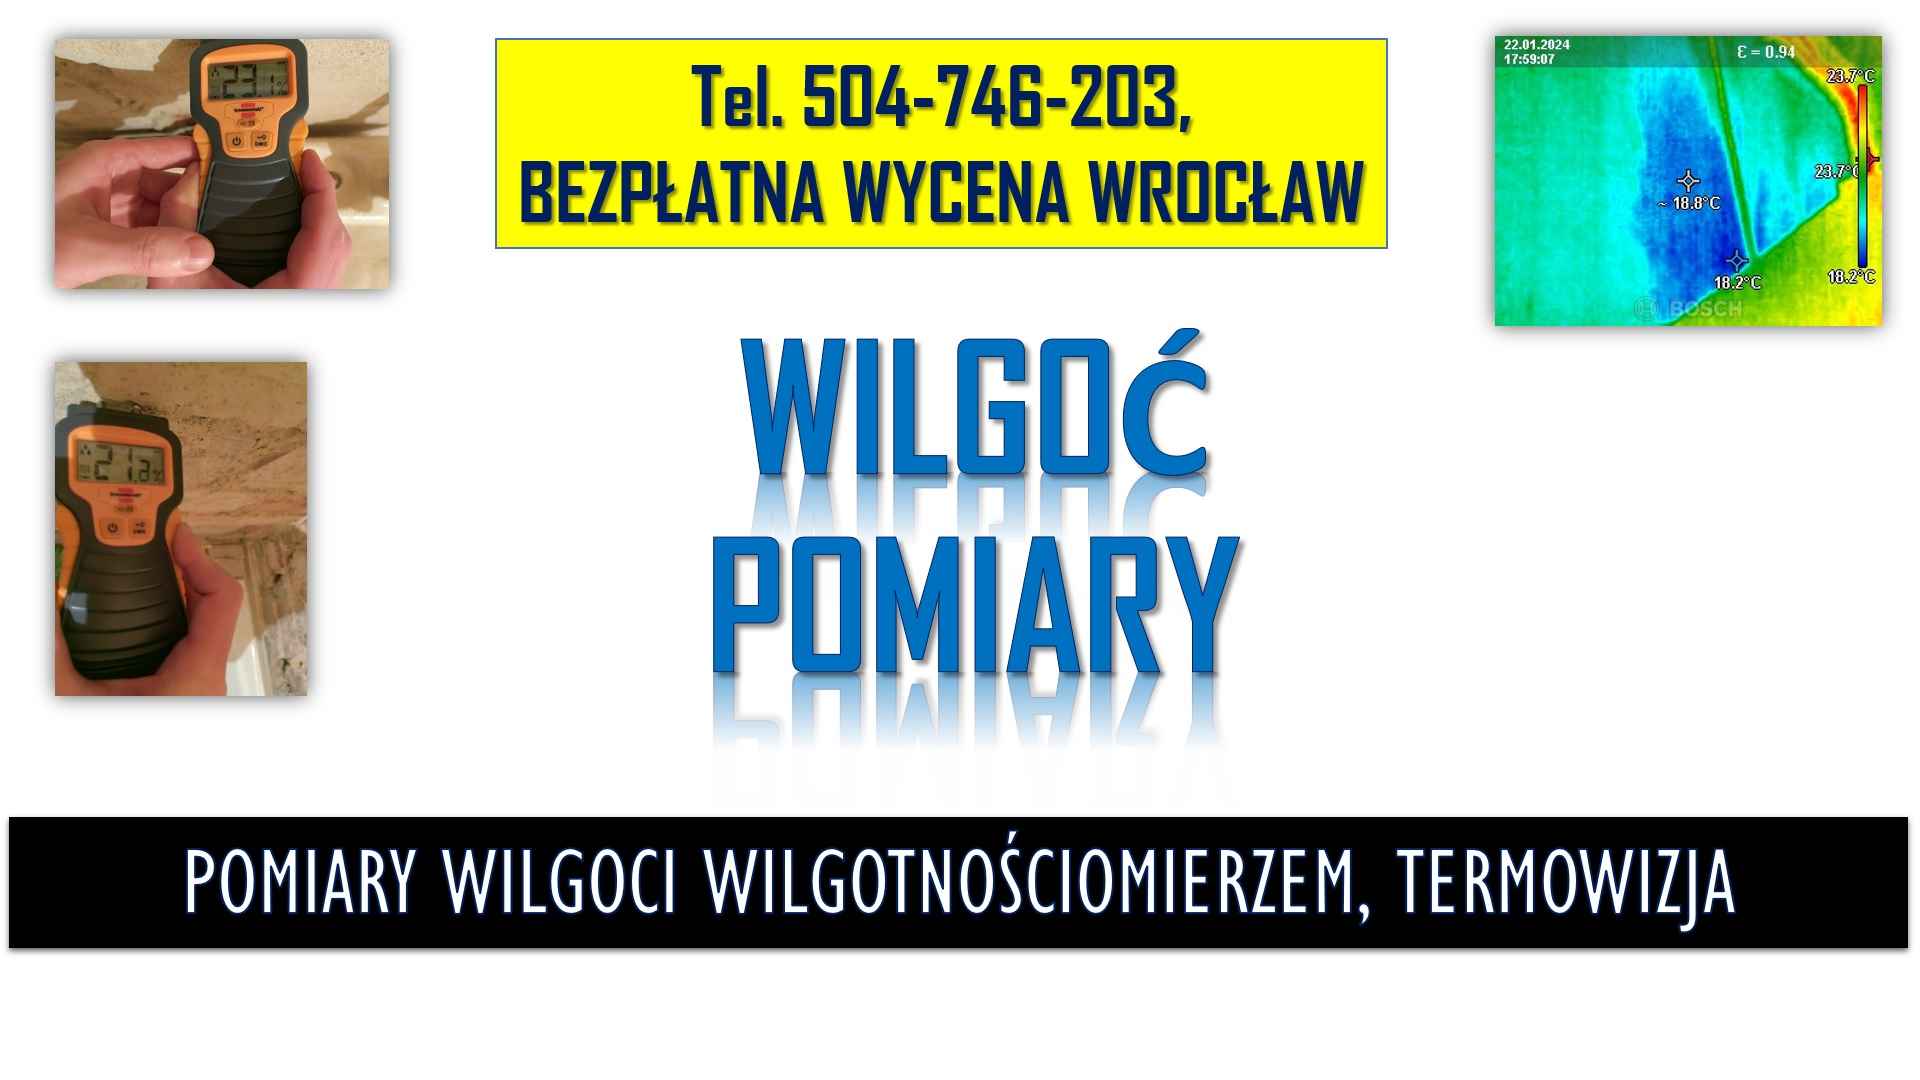 Pomiar wilgotnościomierzem, Wrocław, t.504746203. Wilgotności ściany. Psie Pole - zdjęcie 3